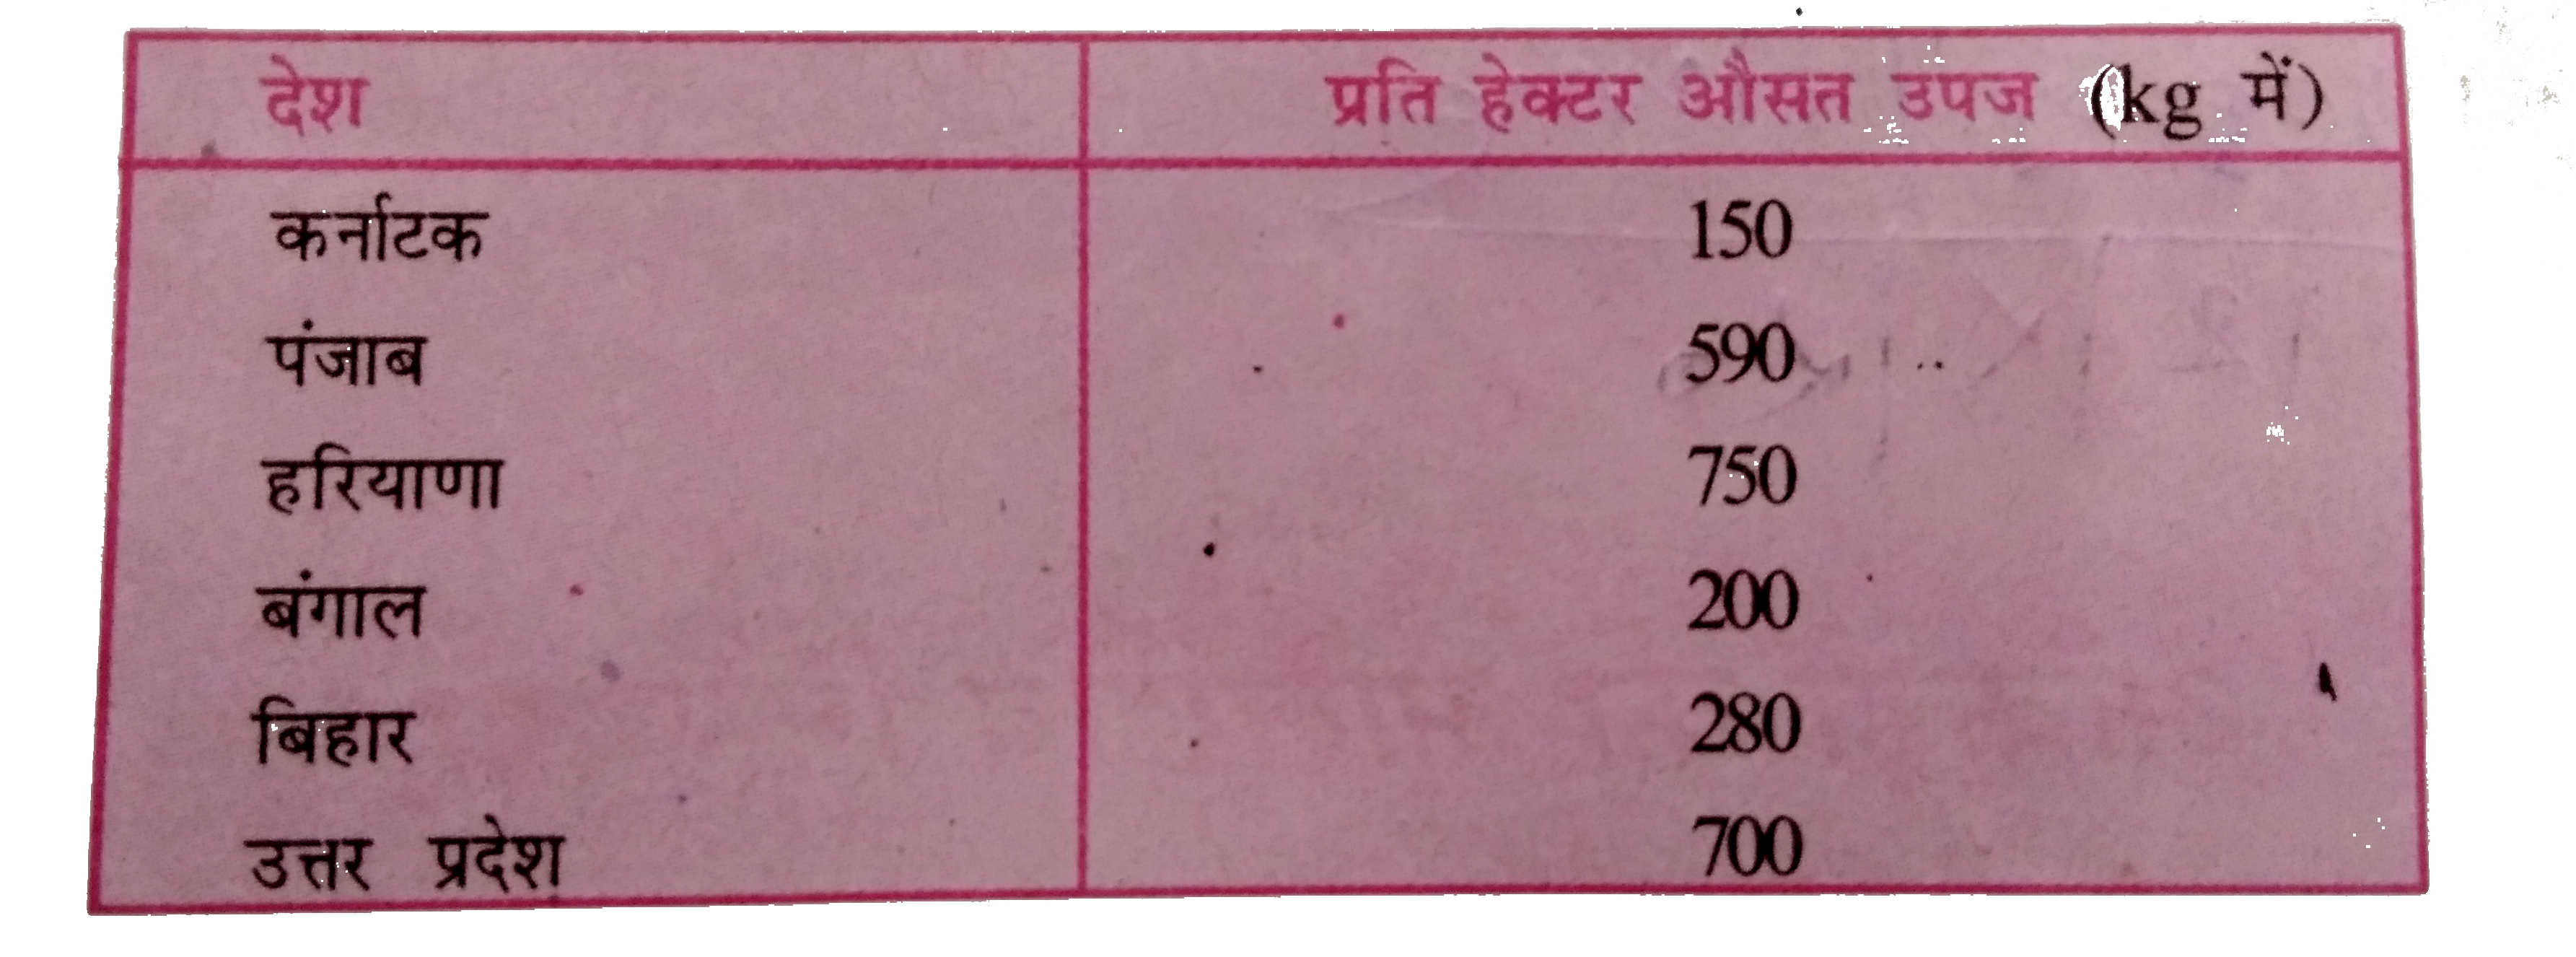 किसी वर्ष विभिन्न राज्यों में प्रति हेक्टर औसत कृषि-उपज (किलोग्राम में) के आंकड़े नीचे सरणी में दिया गया है। उन्हें एक दंड चार्ट में  दिखाएँ।